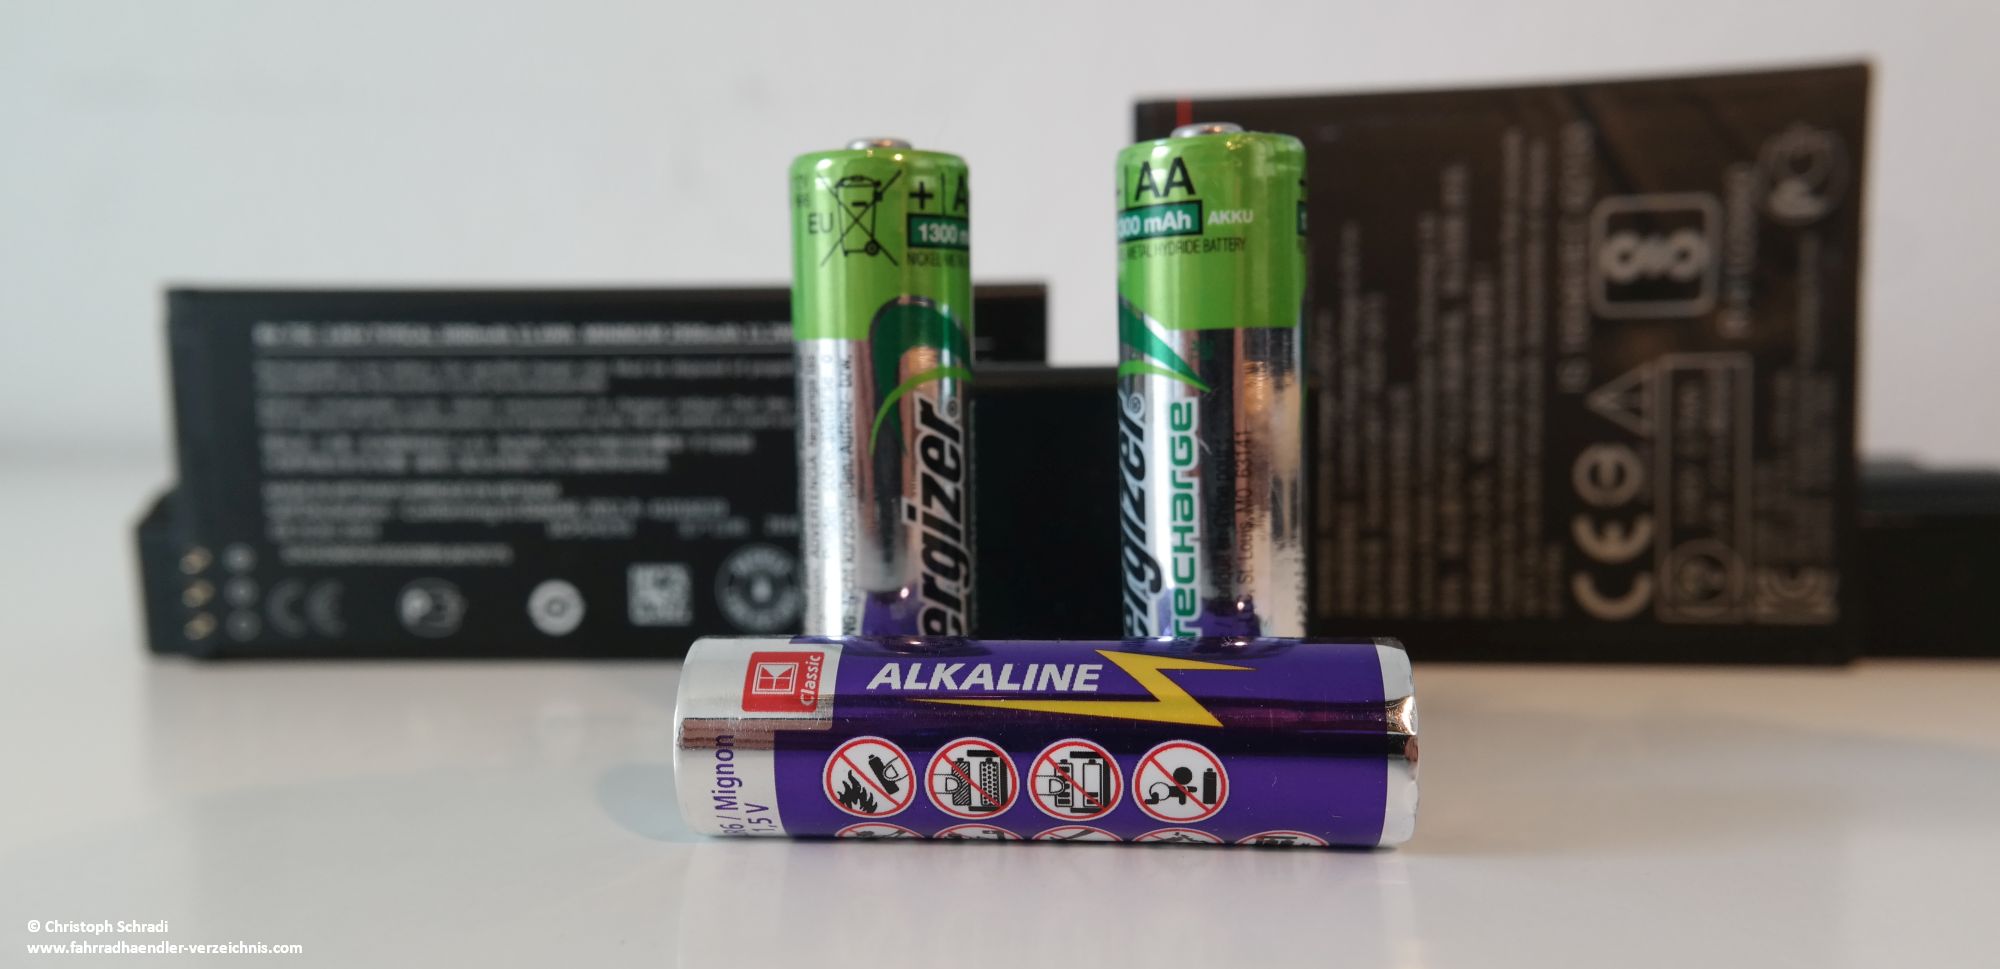 Batterien kommen in den unterschiedlichsten Formen und Größen, es gibt sie zum einmaligen Einsatz (Primärbatterie) oder zum mehrmaligen verwenden - Sekundärbatterie oder auch Akku genannt